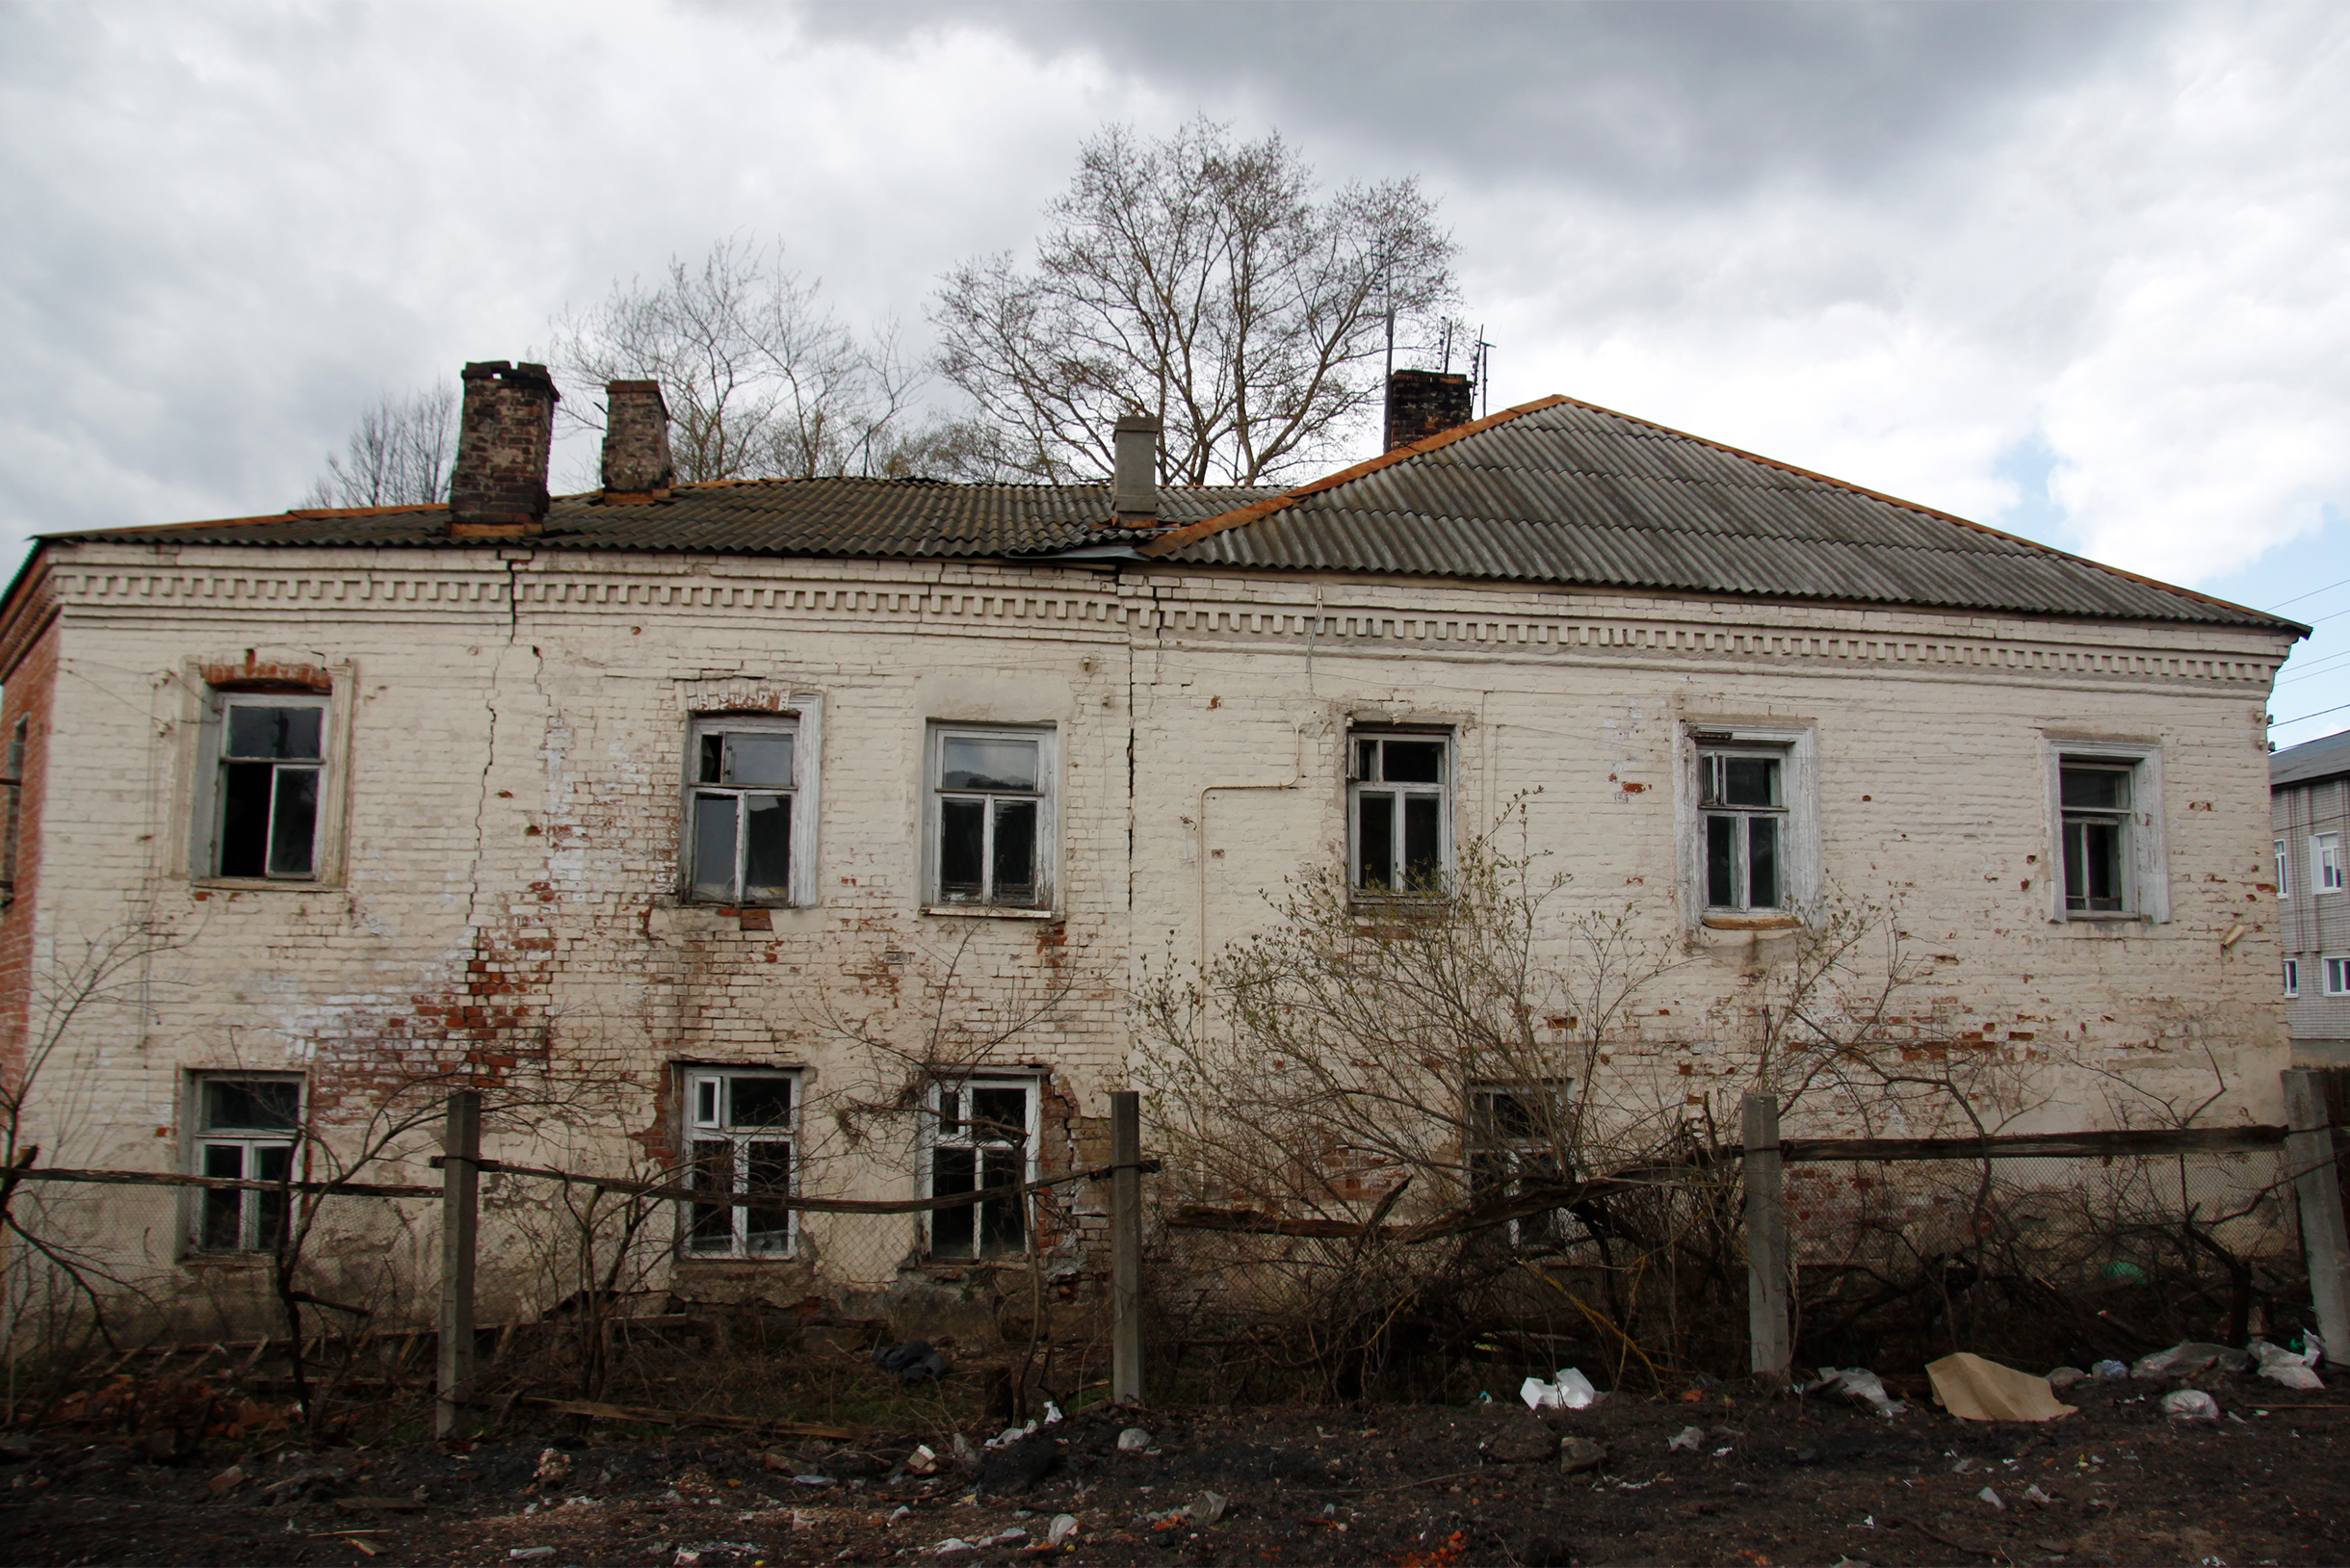 Часть здания окружали остатки забора. Фотография: Влад Коваленко